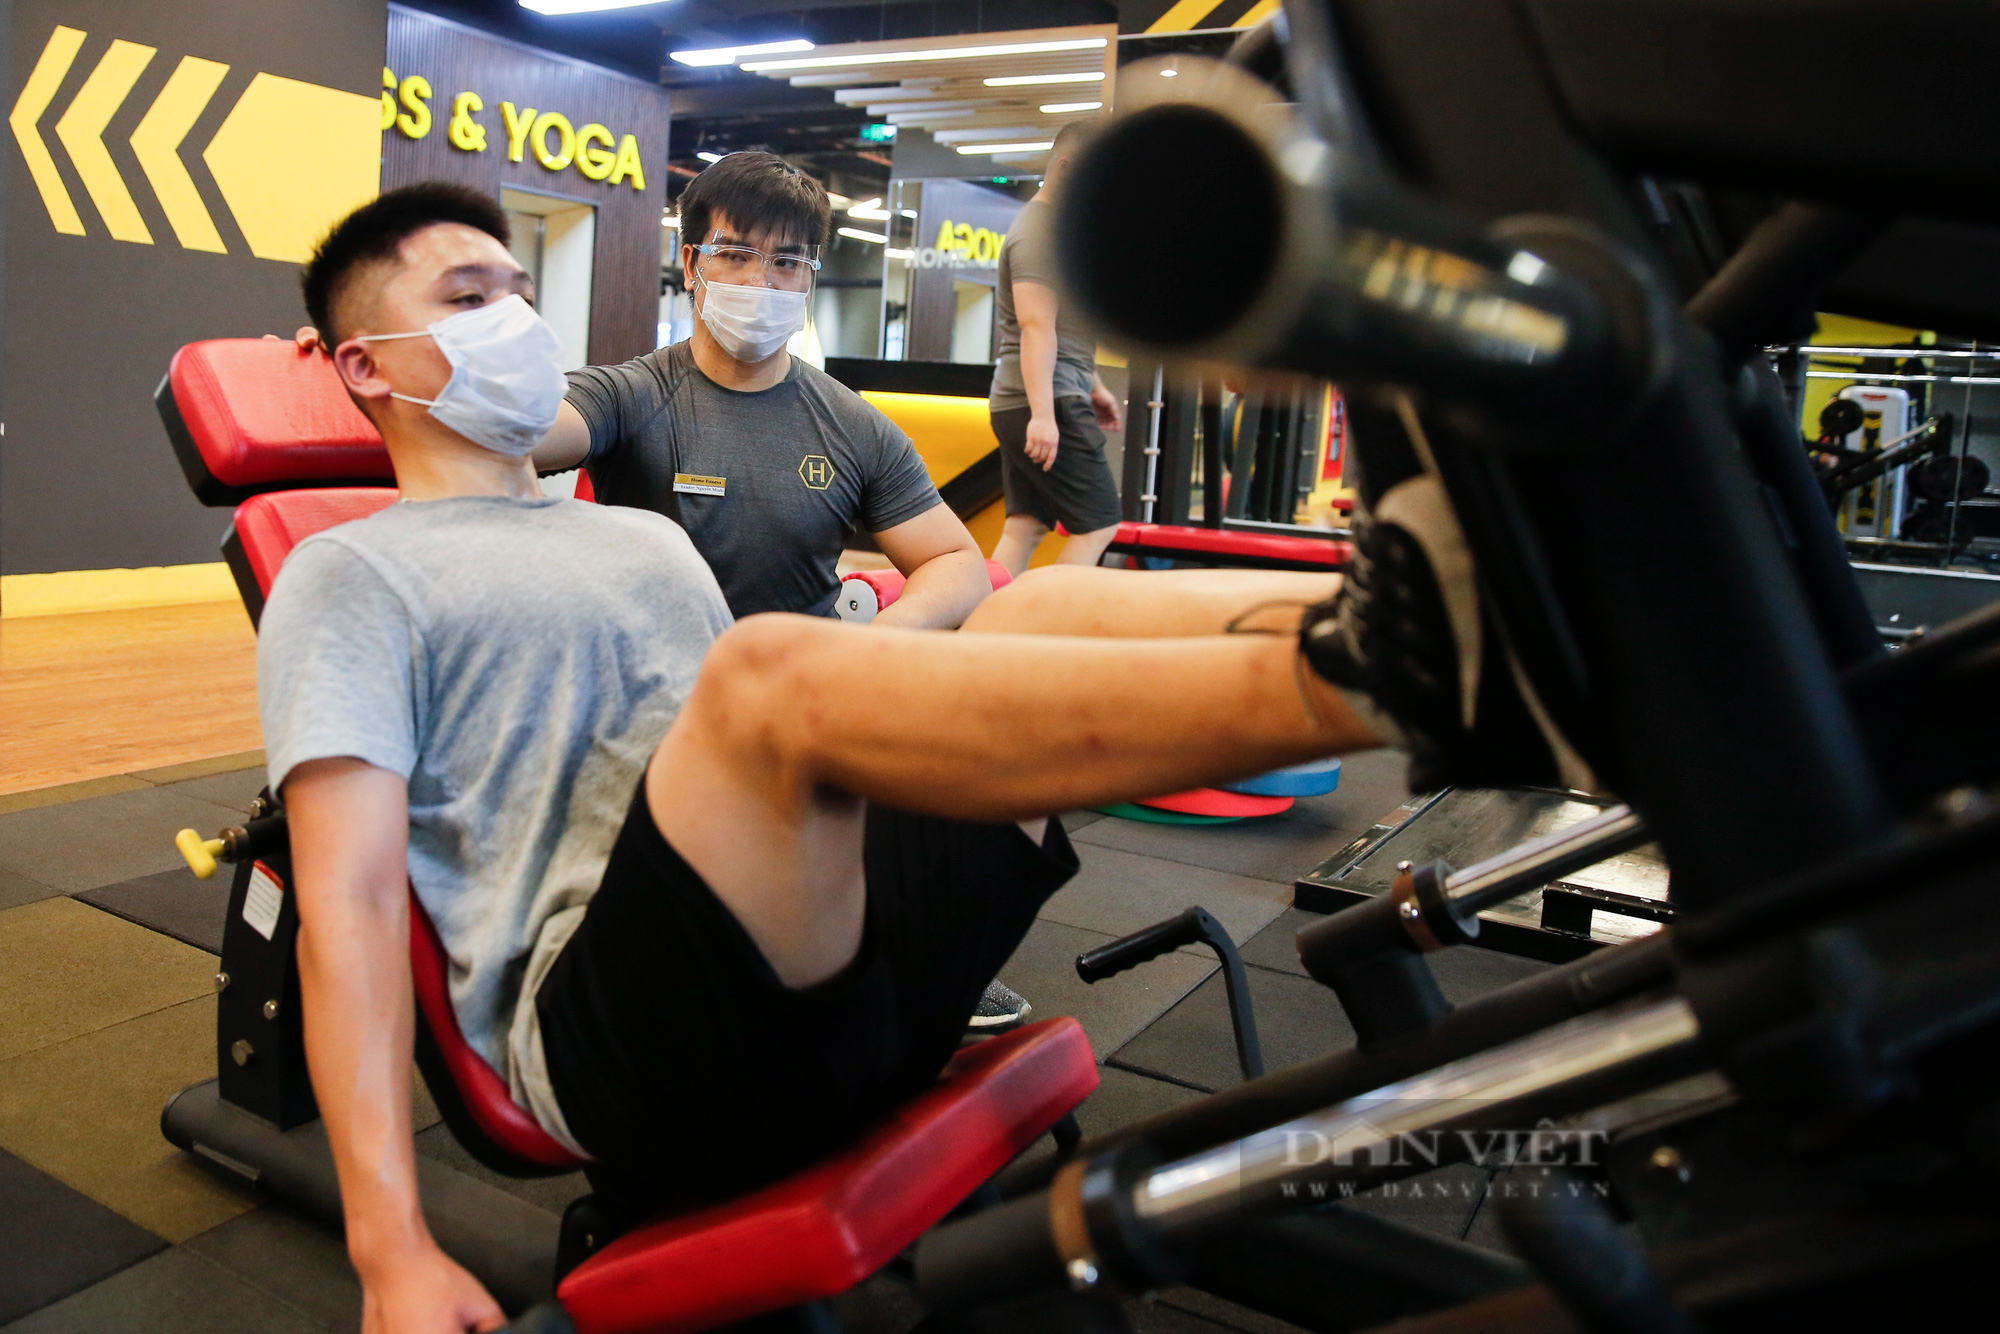 Phòng gym tại Hà Nội vắng vẻ, người dân đeo khẩu trang kín mít khi luyện tập - Ảnh 4.